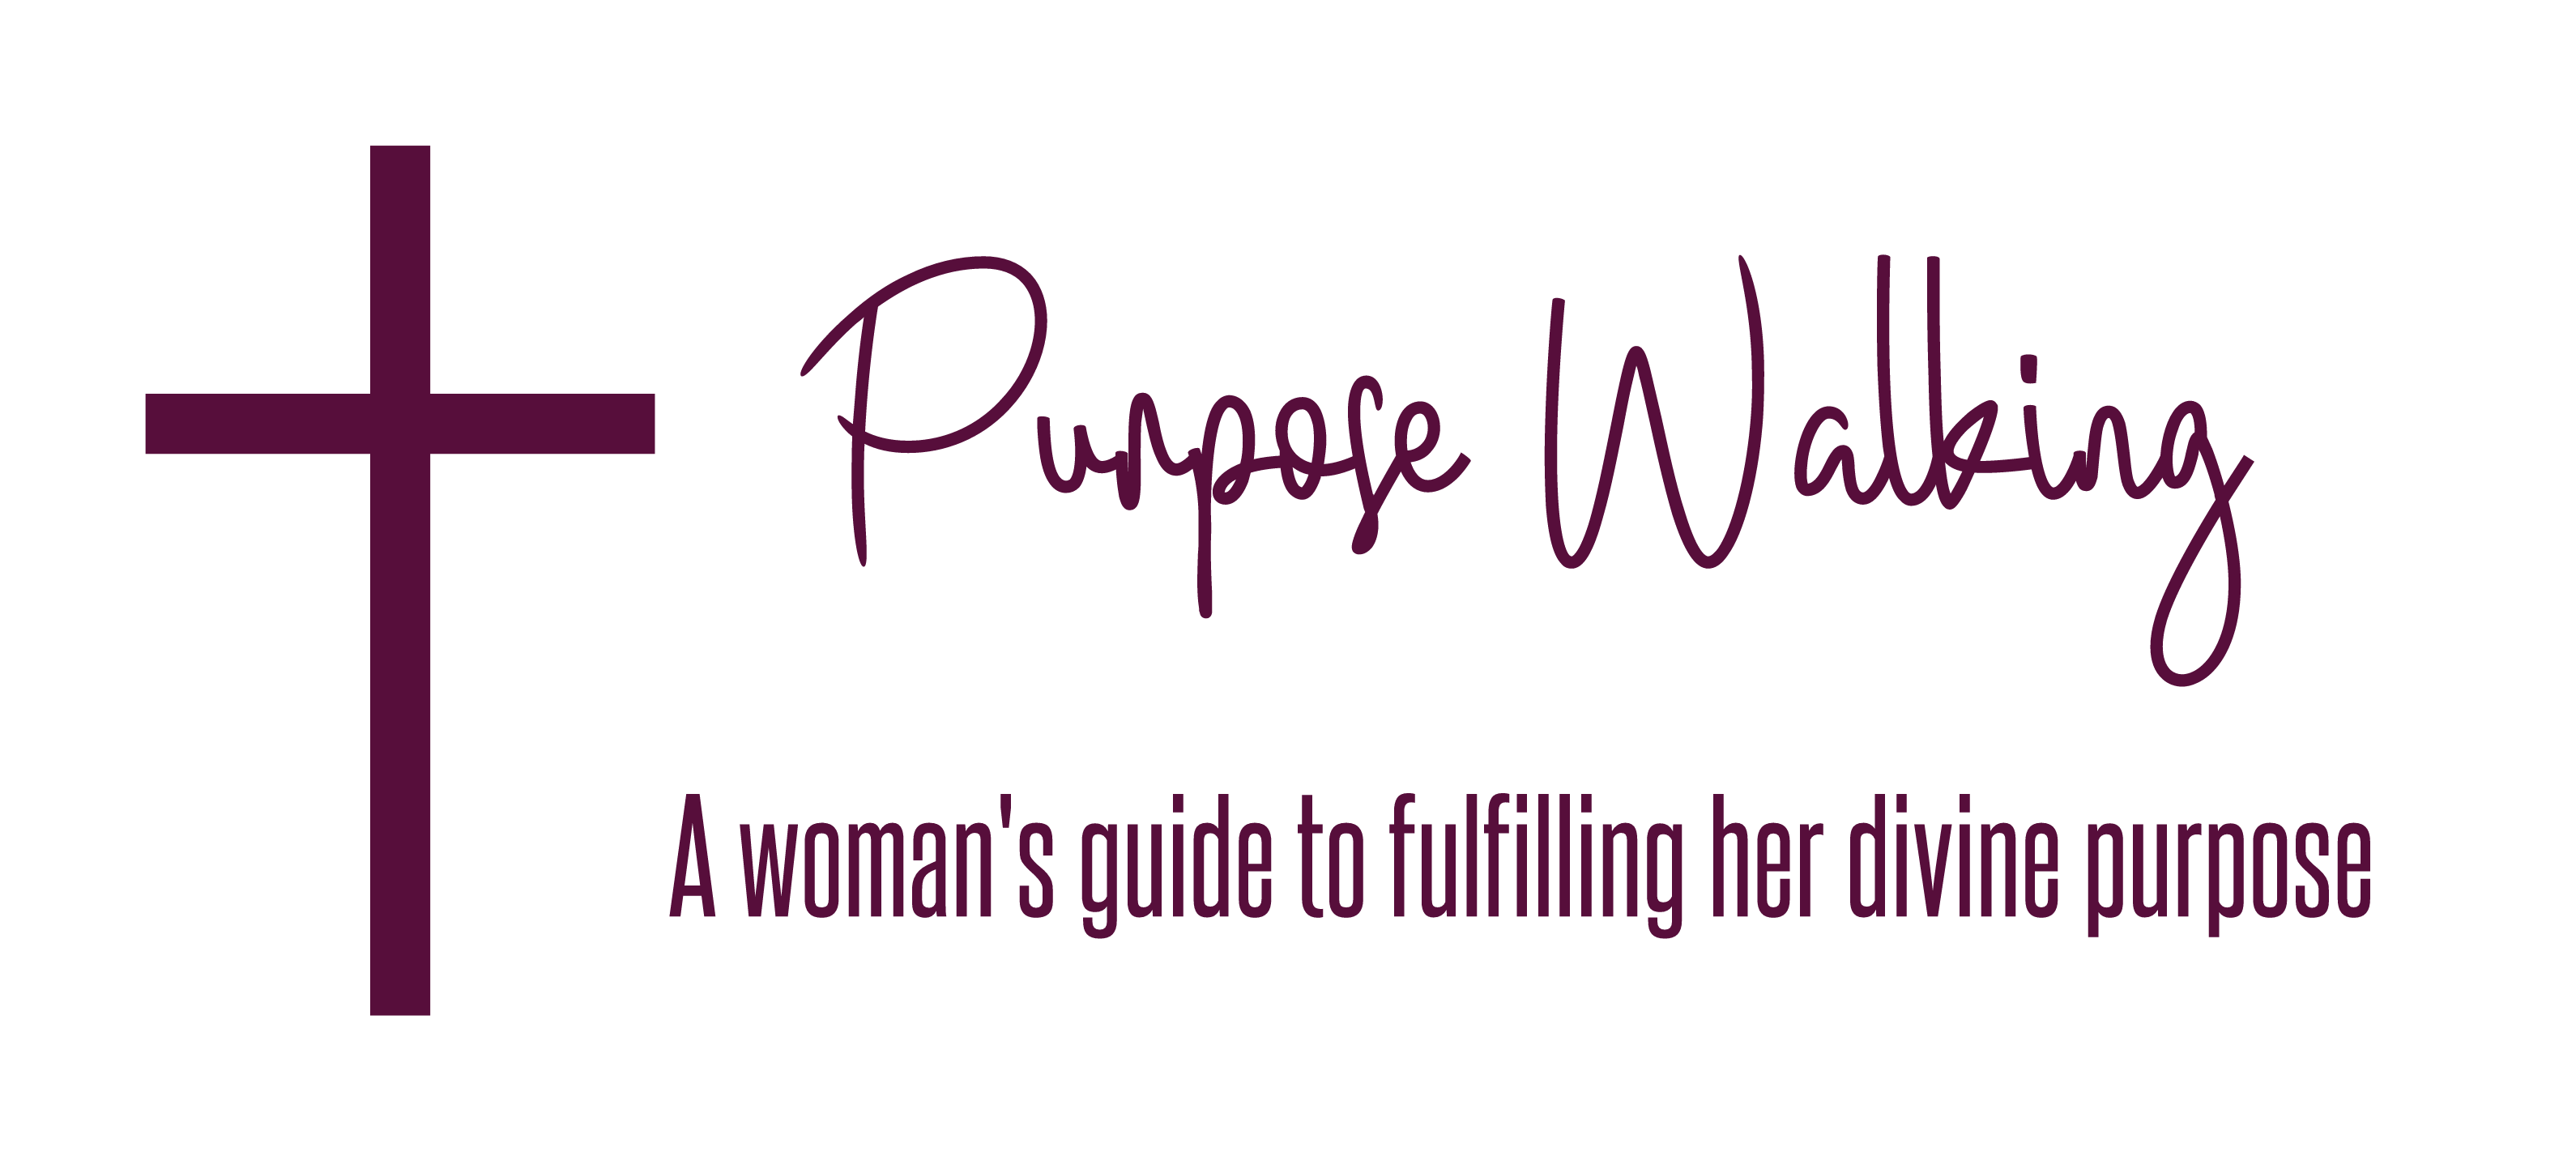 Purpose Walking